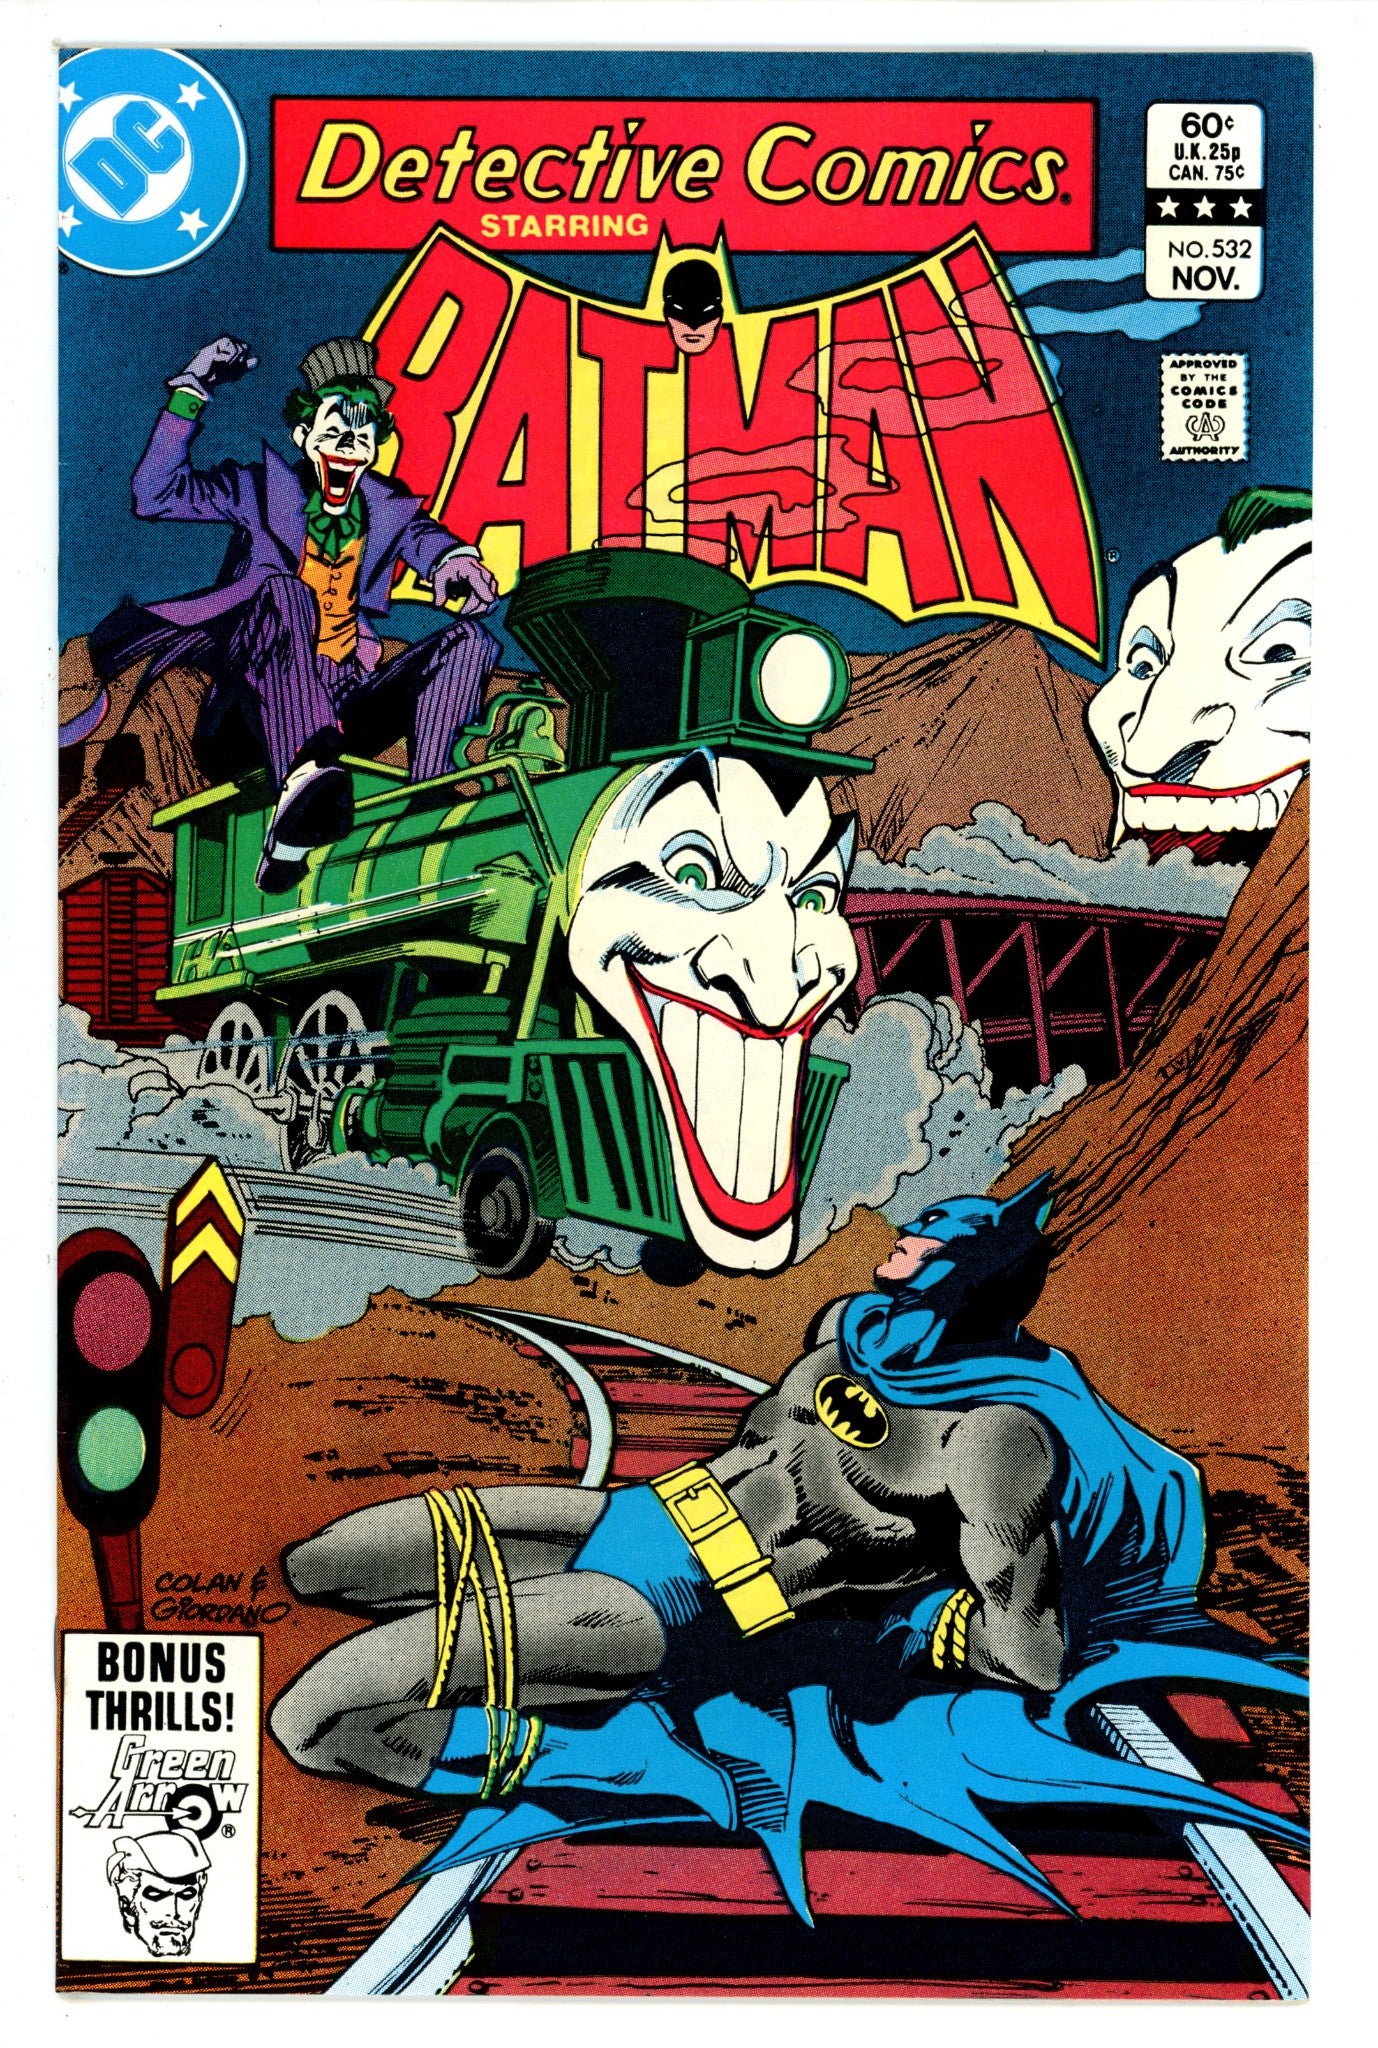 Detective Comics Vol 1 532 NM-